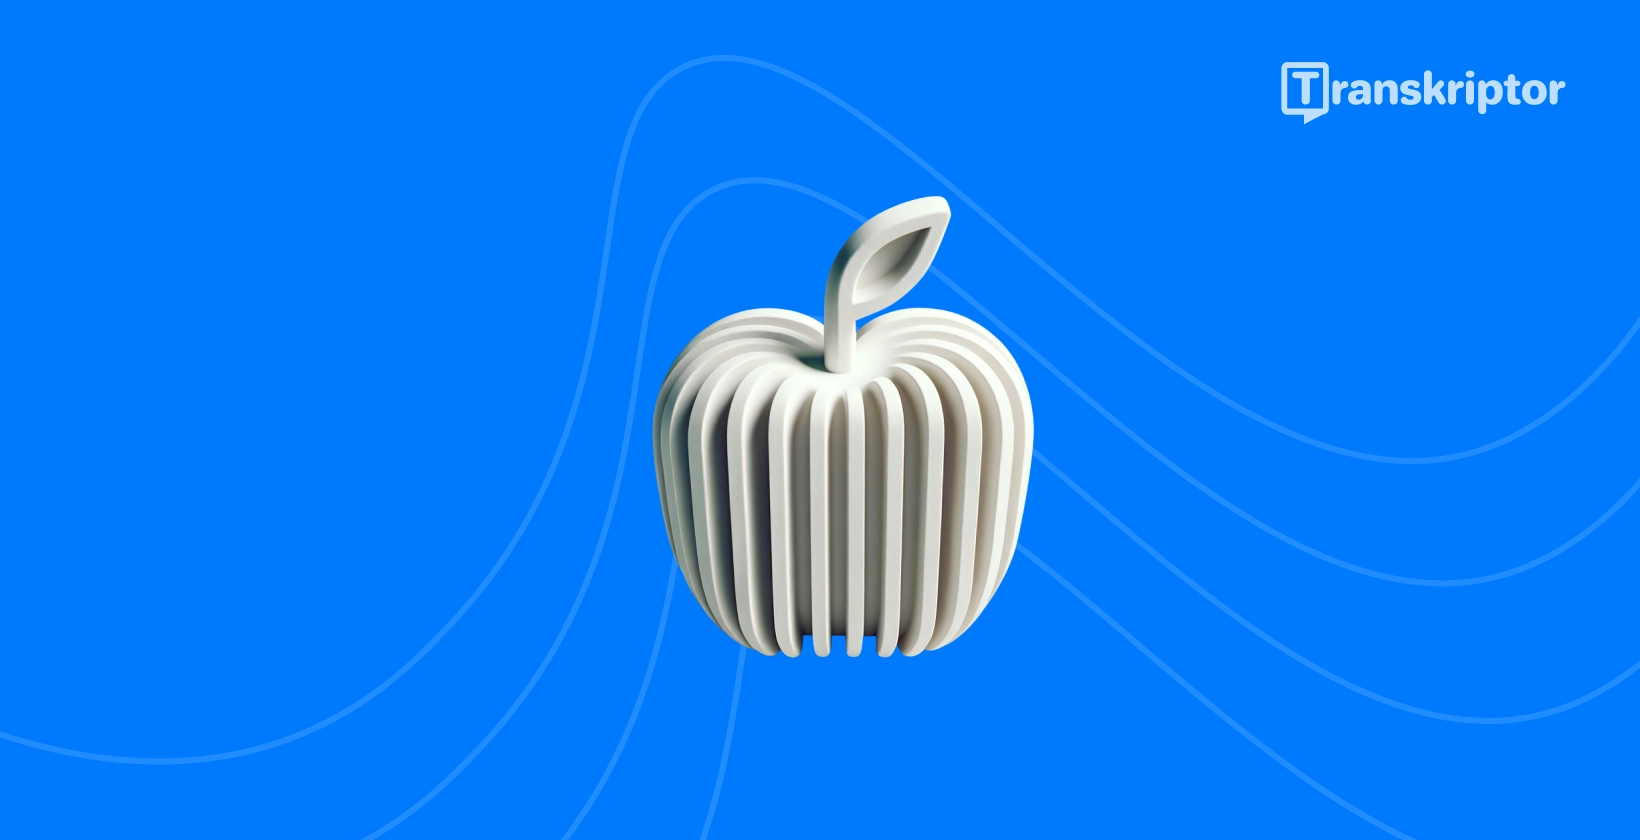 Helilainetega stiliseeritud õun esindab parimaid transkriptsioonirakendusi, mis on iPhone kasutajatele saadaval.